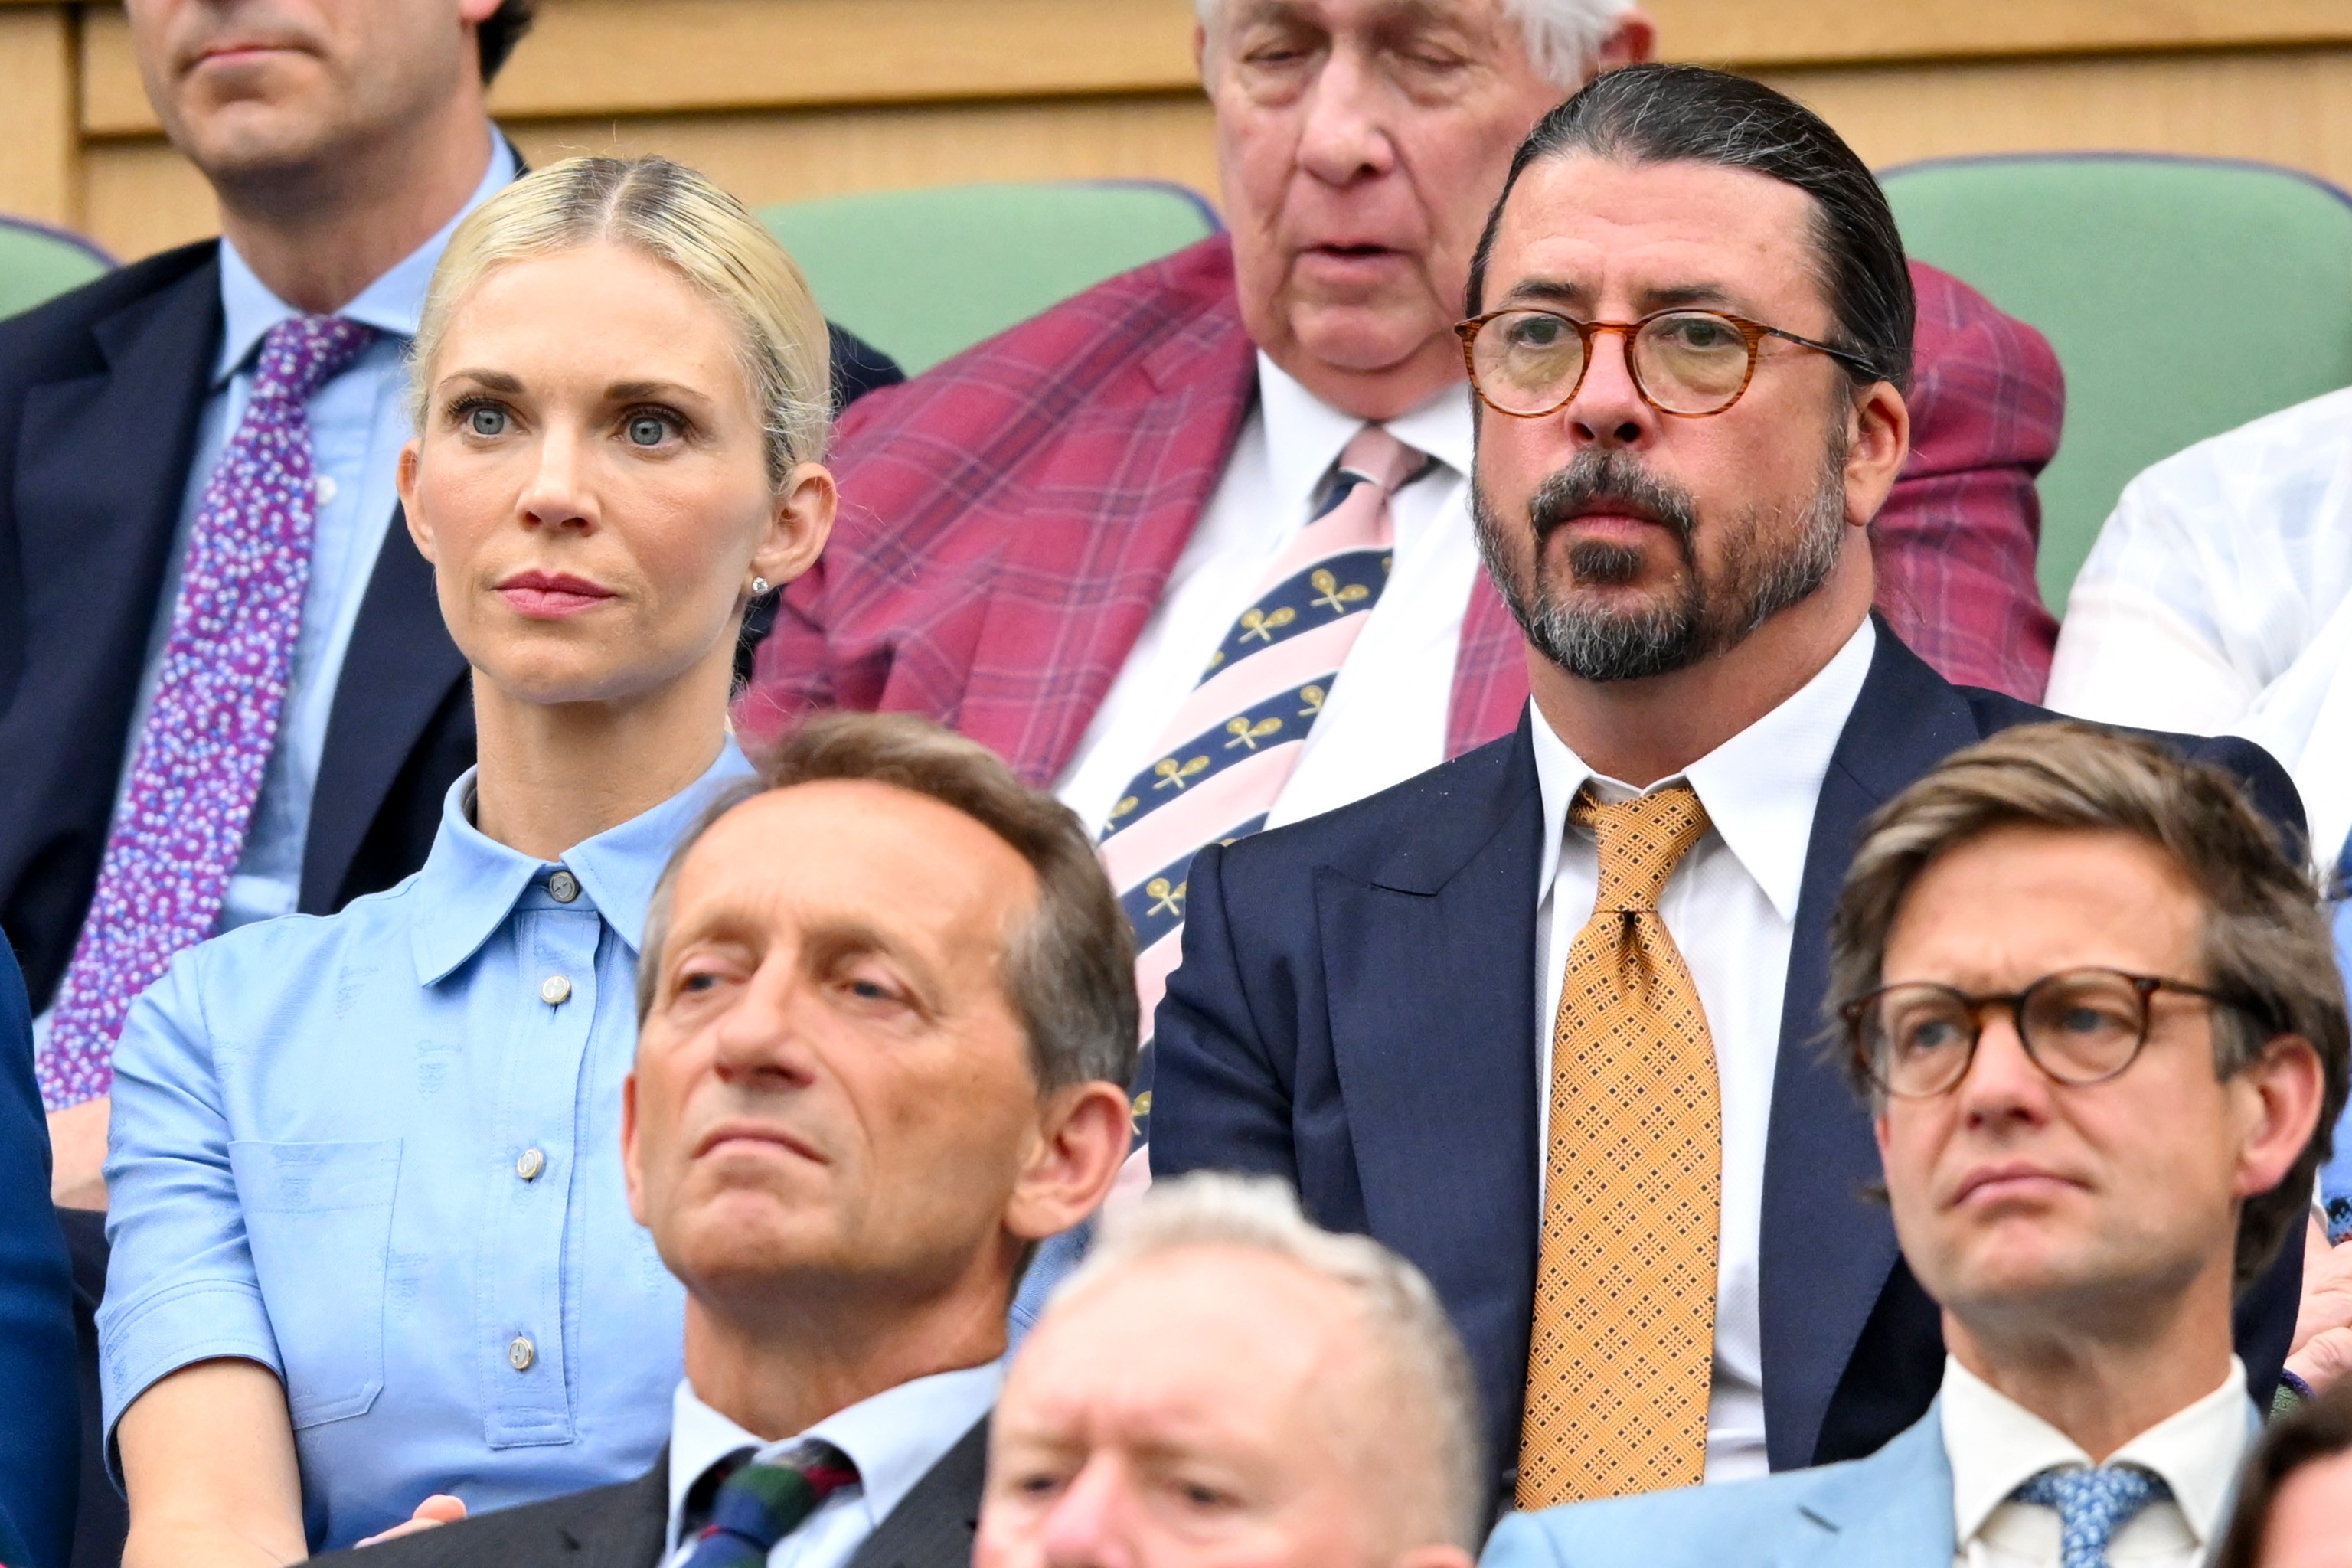 Dave Grohl, do Foo Fighters, assiste a jogo de Djokovic em Wimbledon